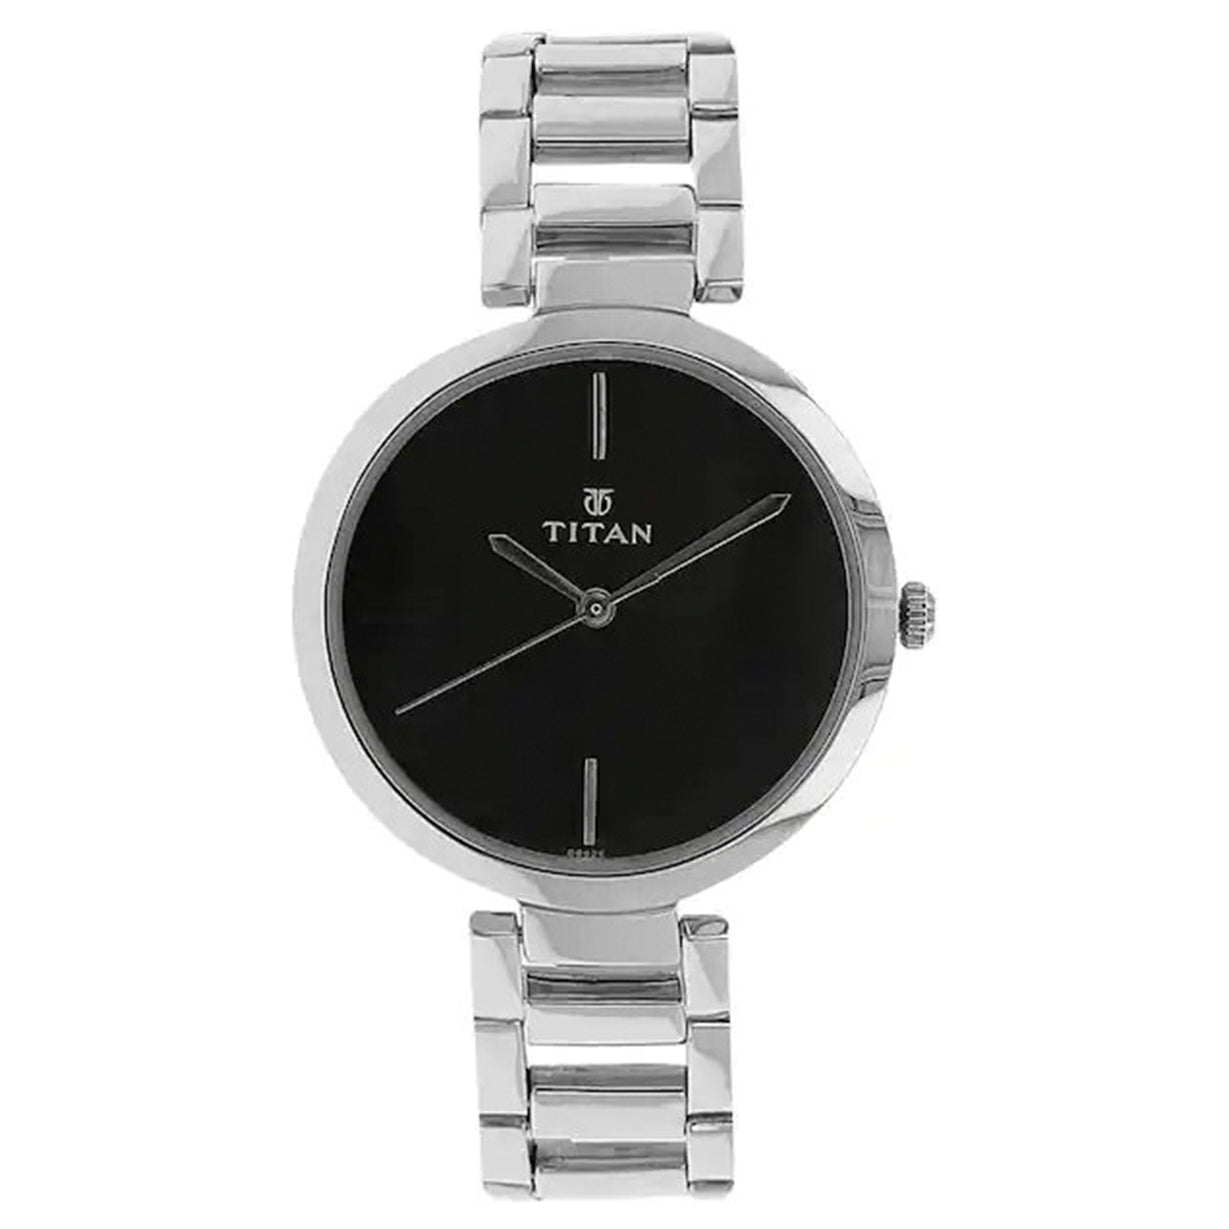 Titan Workwear Watches | Buy Titan Workwear Watches Online a… | Flickr